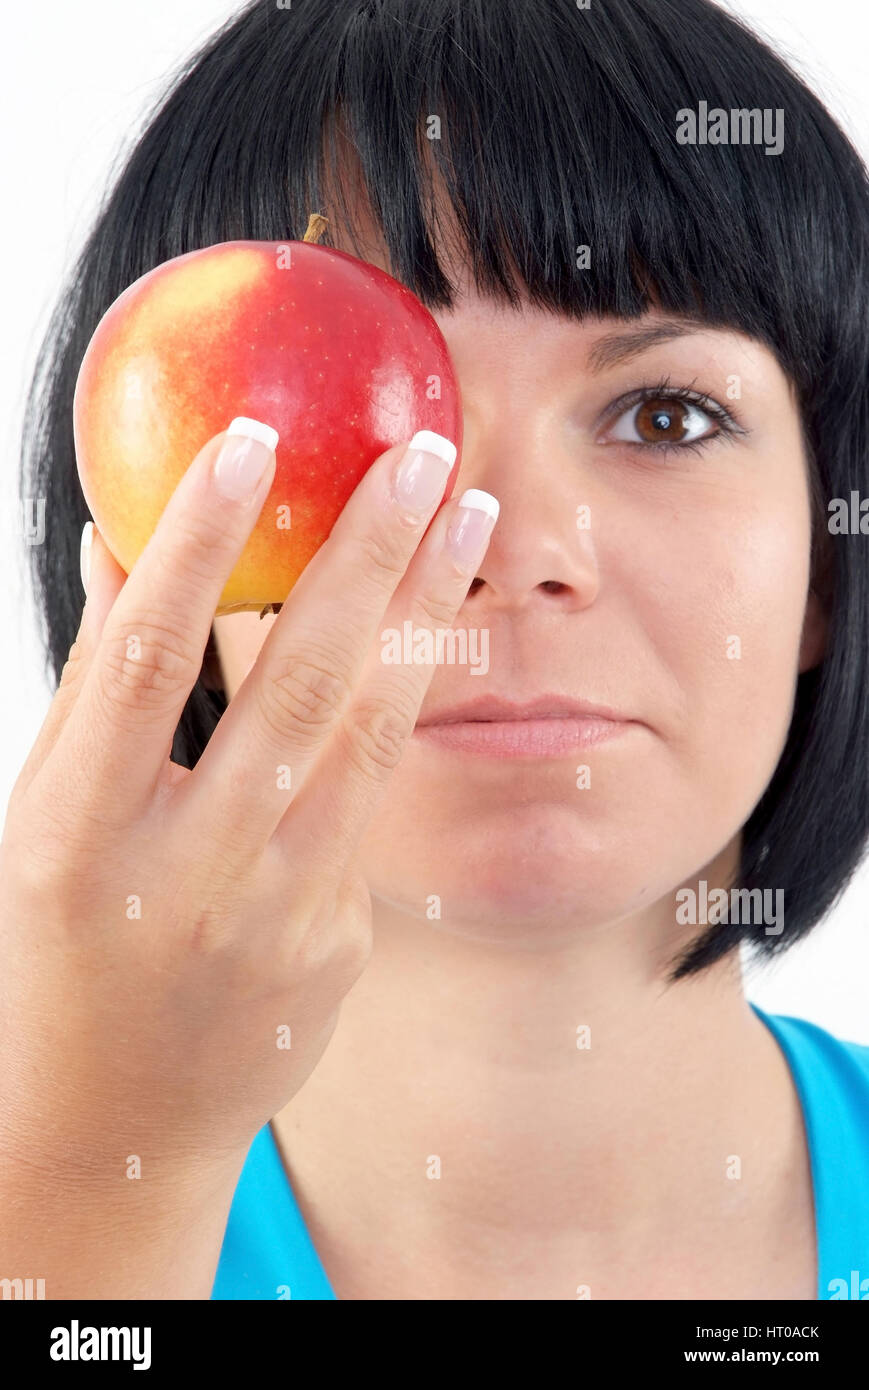 Schwarzhaarige, junge Frau mit Apfel vor dem gesicht - Femme avec Apple Banque D'Images